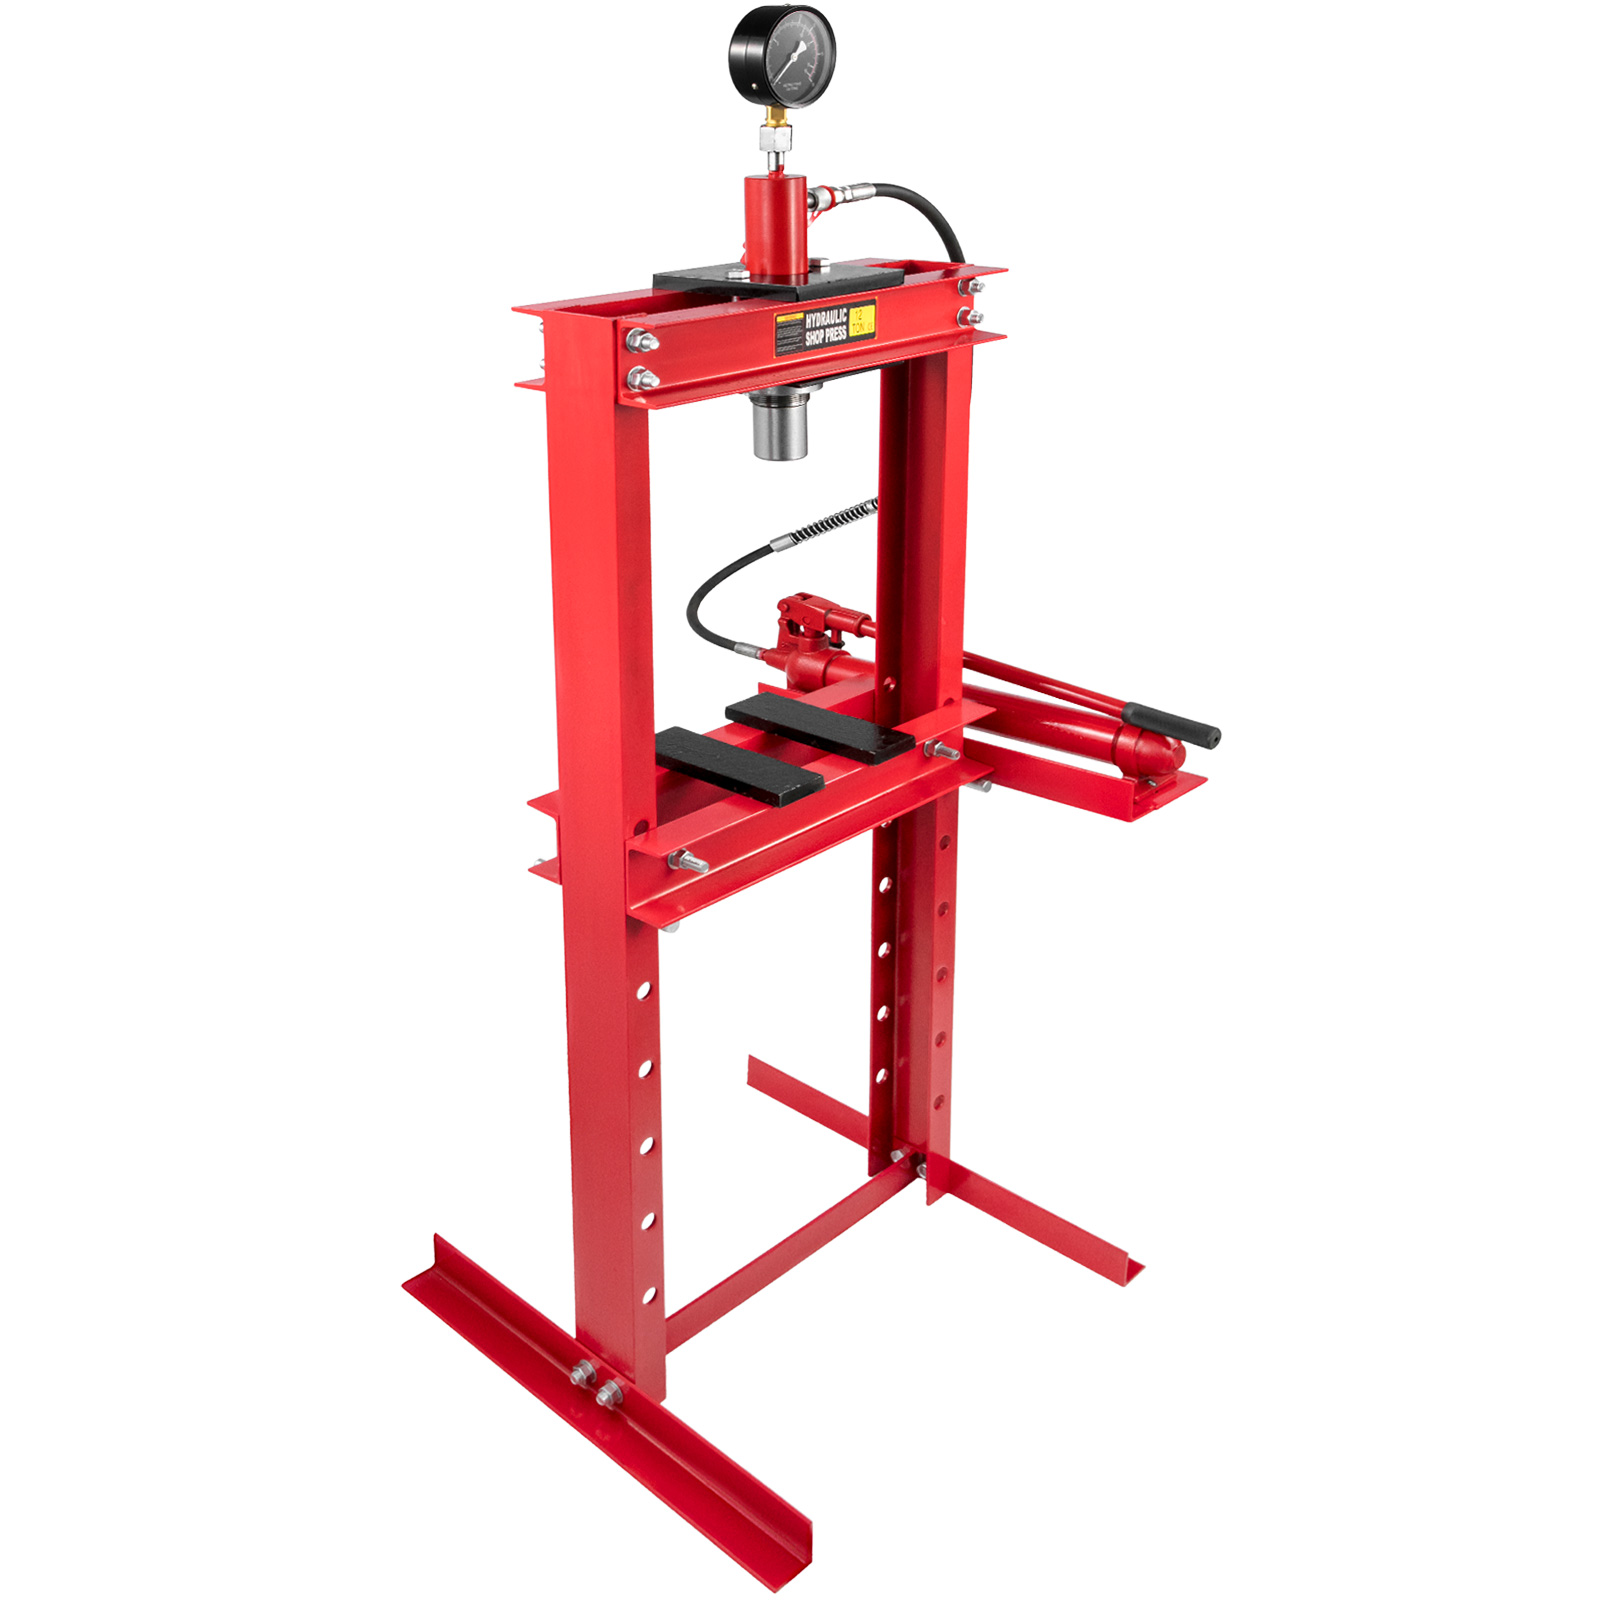 Hydraulic Press Shop Floor Press 12 Ton H-frame 26455 Lb W/ Heavy Duty Steel Plates Red от Vevor Many GEOs